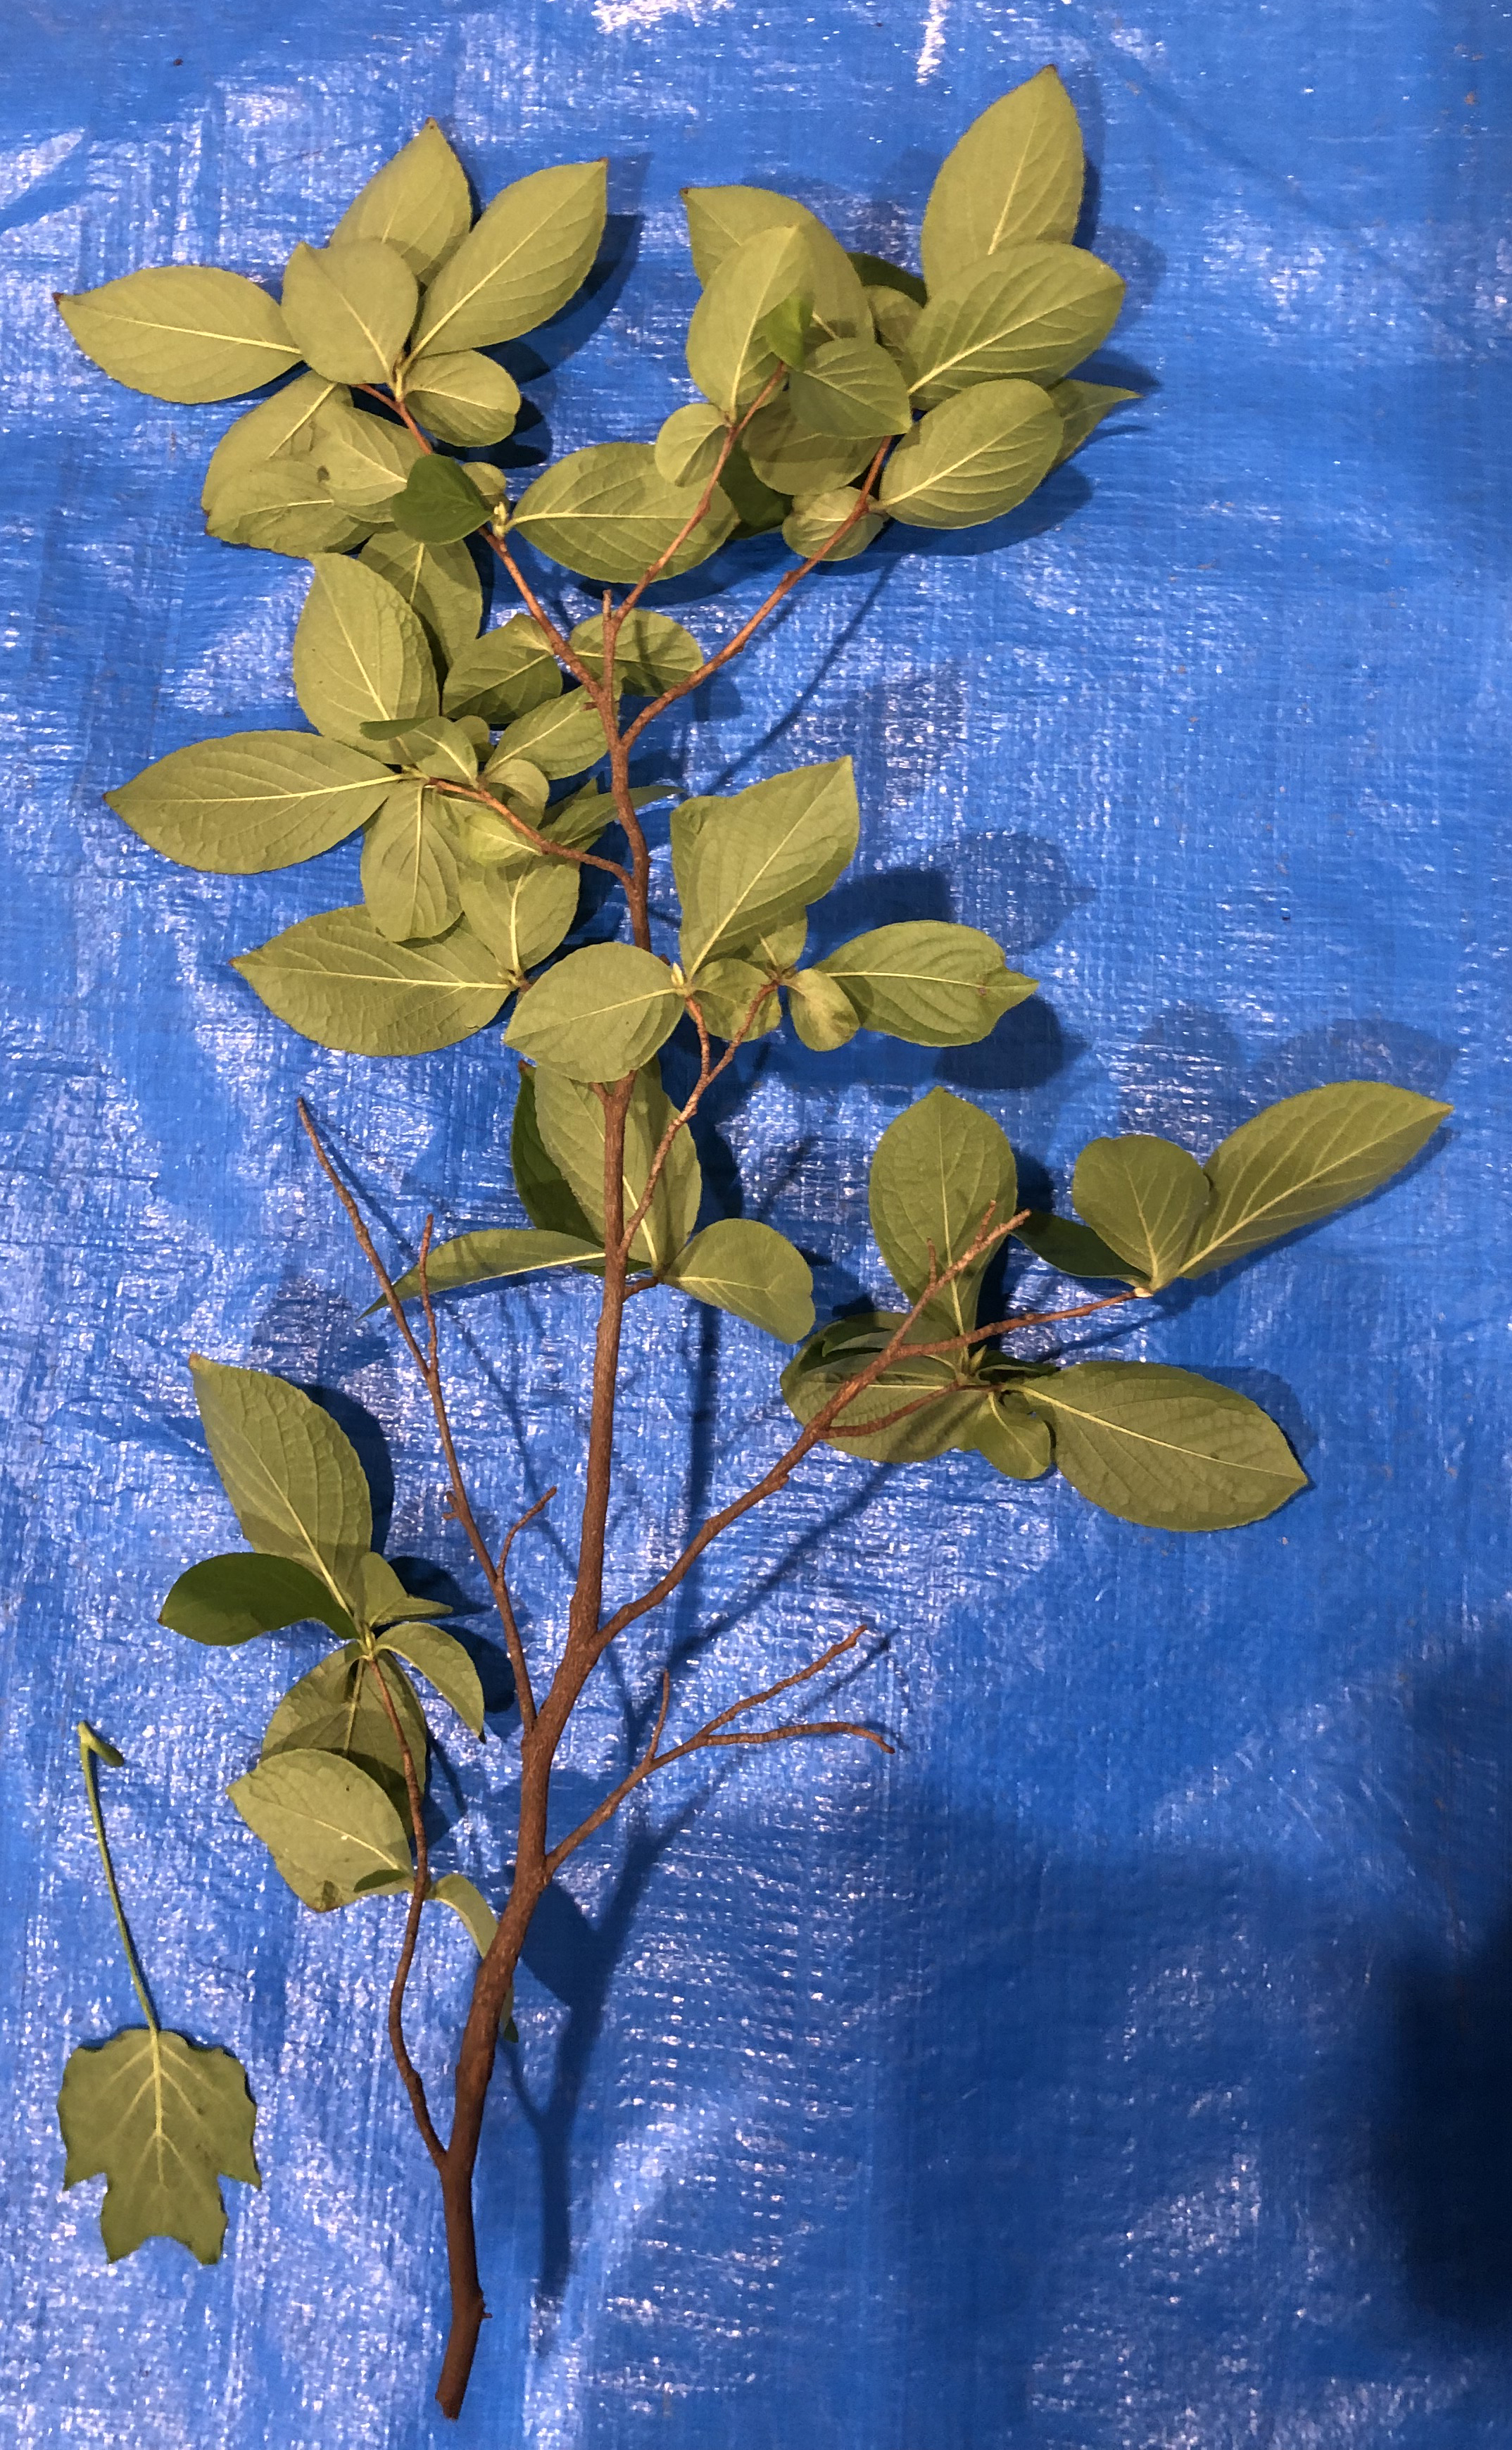 ナツツバキ - Stewartia pseudocamellia